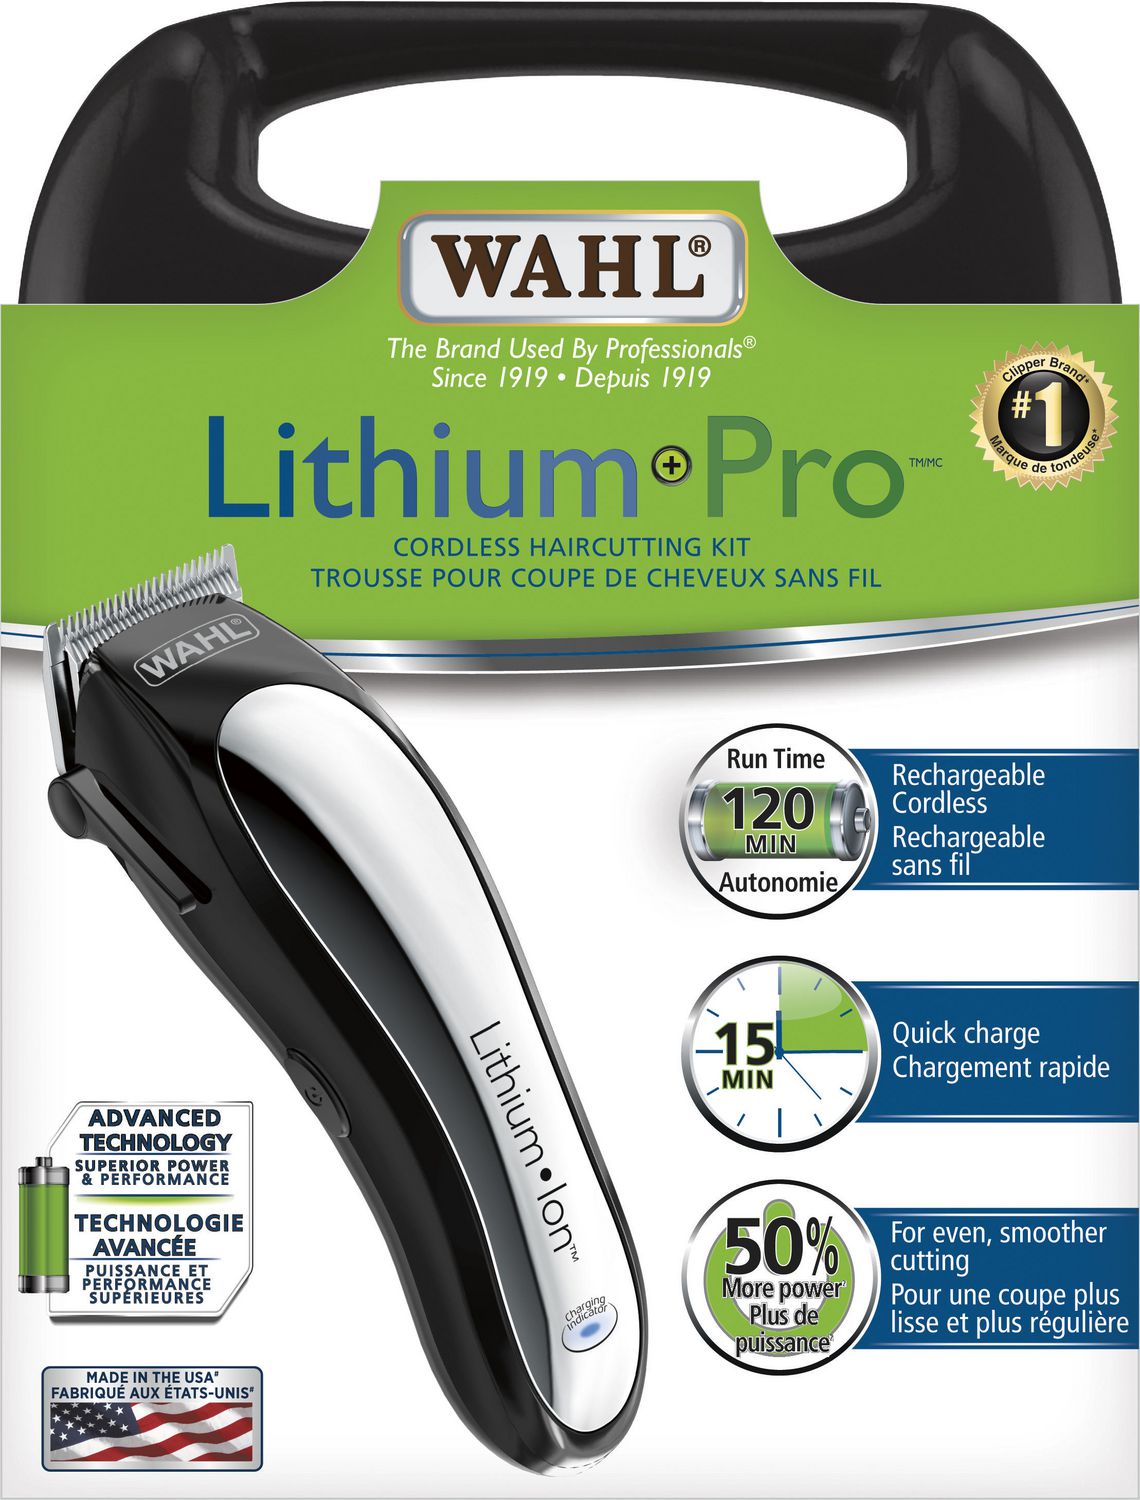 wahl lithium pro hair cutting kit